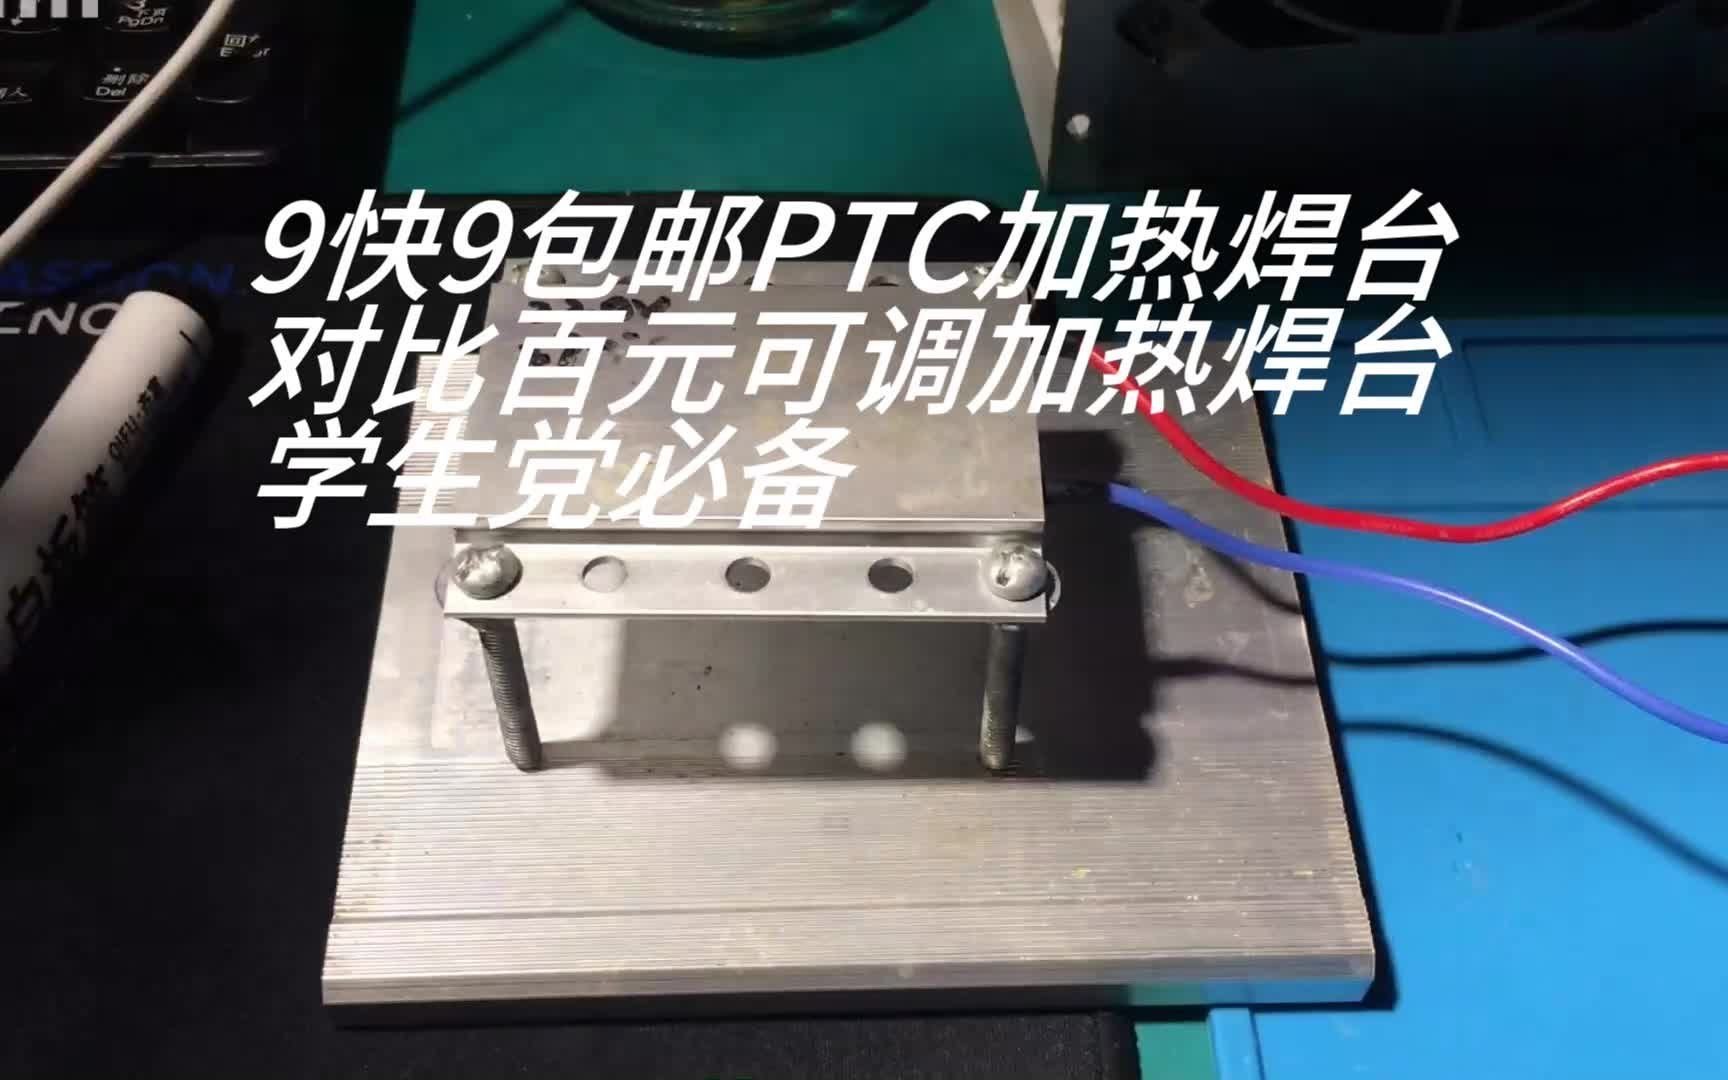 自制9快9包邮PTC陶瓷加热台对比百元PCB板可调焊台